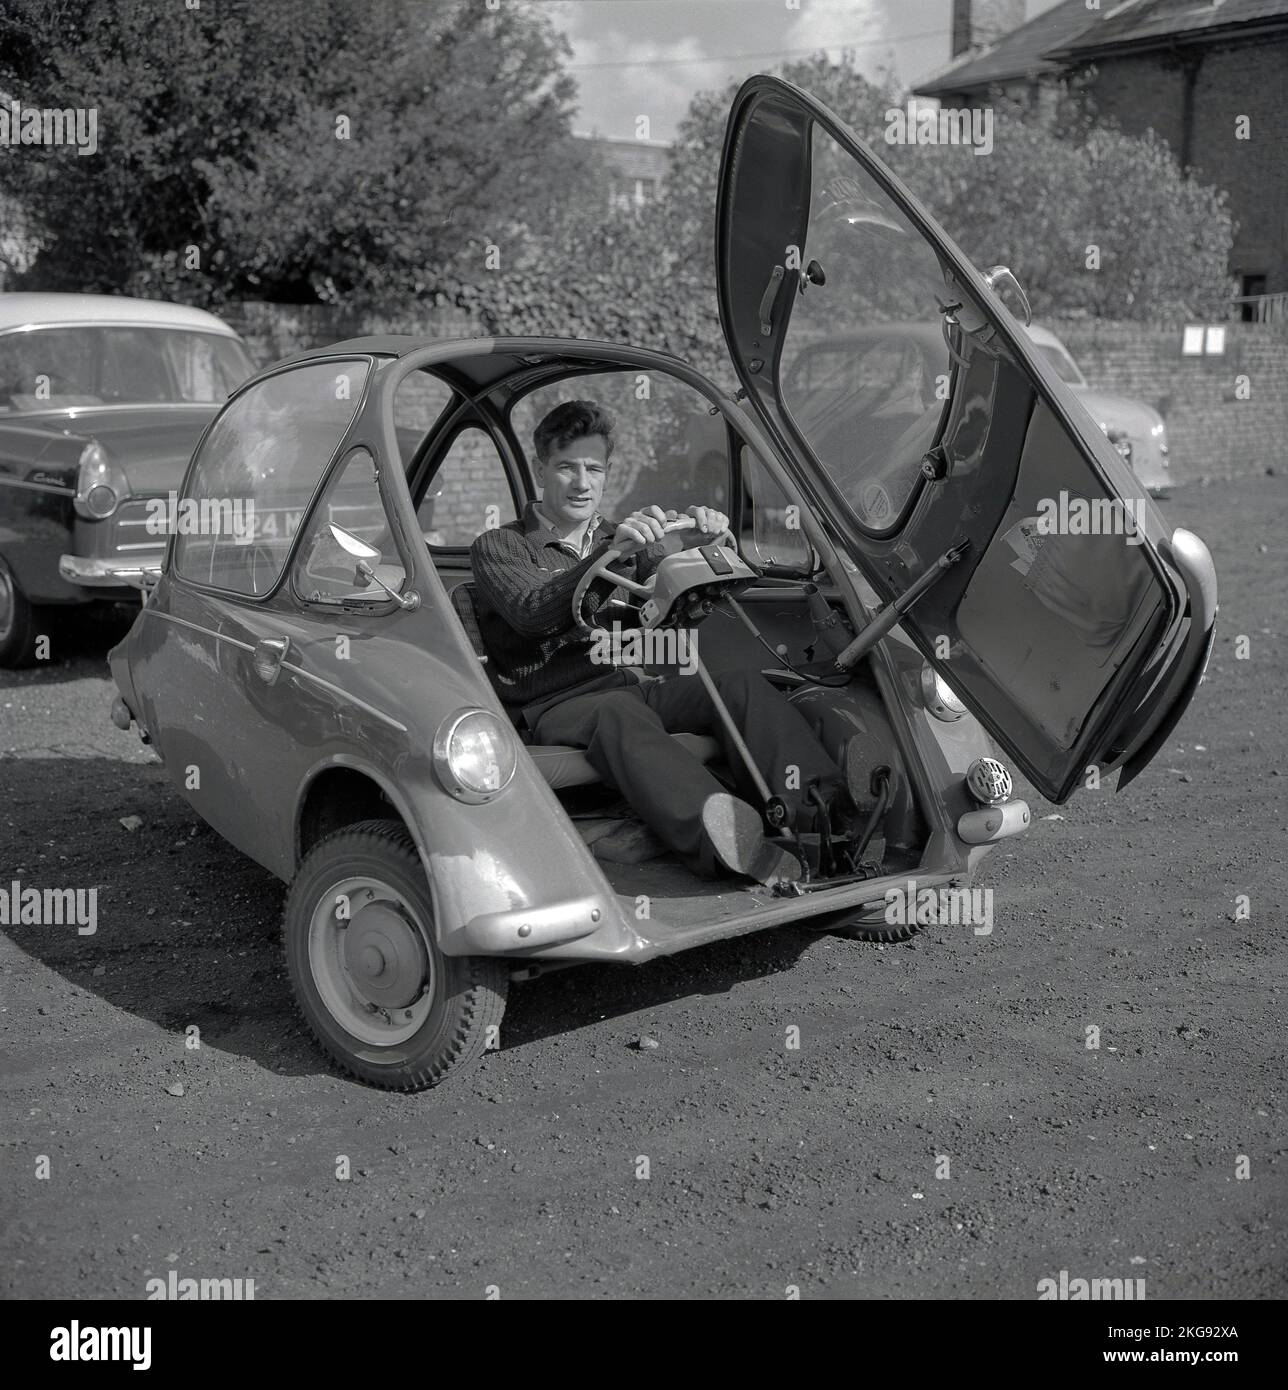 1960s, historique, à l'extérieur dans un parking en gravier, un homme assis à l'intérieur d'une petite voiture de l'époque, une voiture à bulles, une BMW Isetta, qui avait une porte d'ouverture avant, Wycombe, Angleterre, Royaume-Uni. Construite pour la première fois par ISO spa en Italie en 1953, cette petite voiture a été construite sous licence dans différents pays, y compris par BMW en Allemagne jusqu'en 1962 et connue sous le nom de « Bubble car ». Banque D'Images